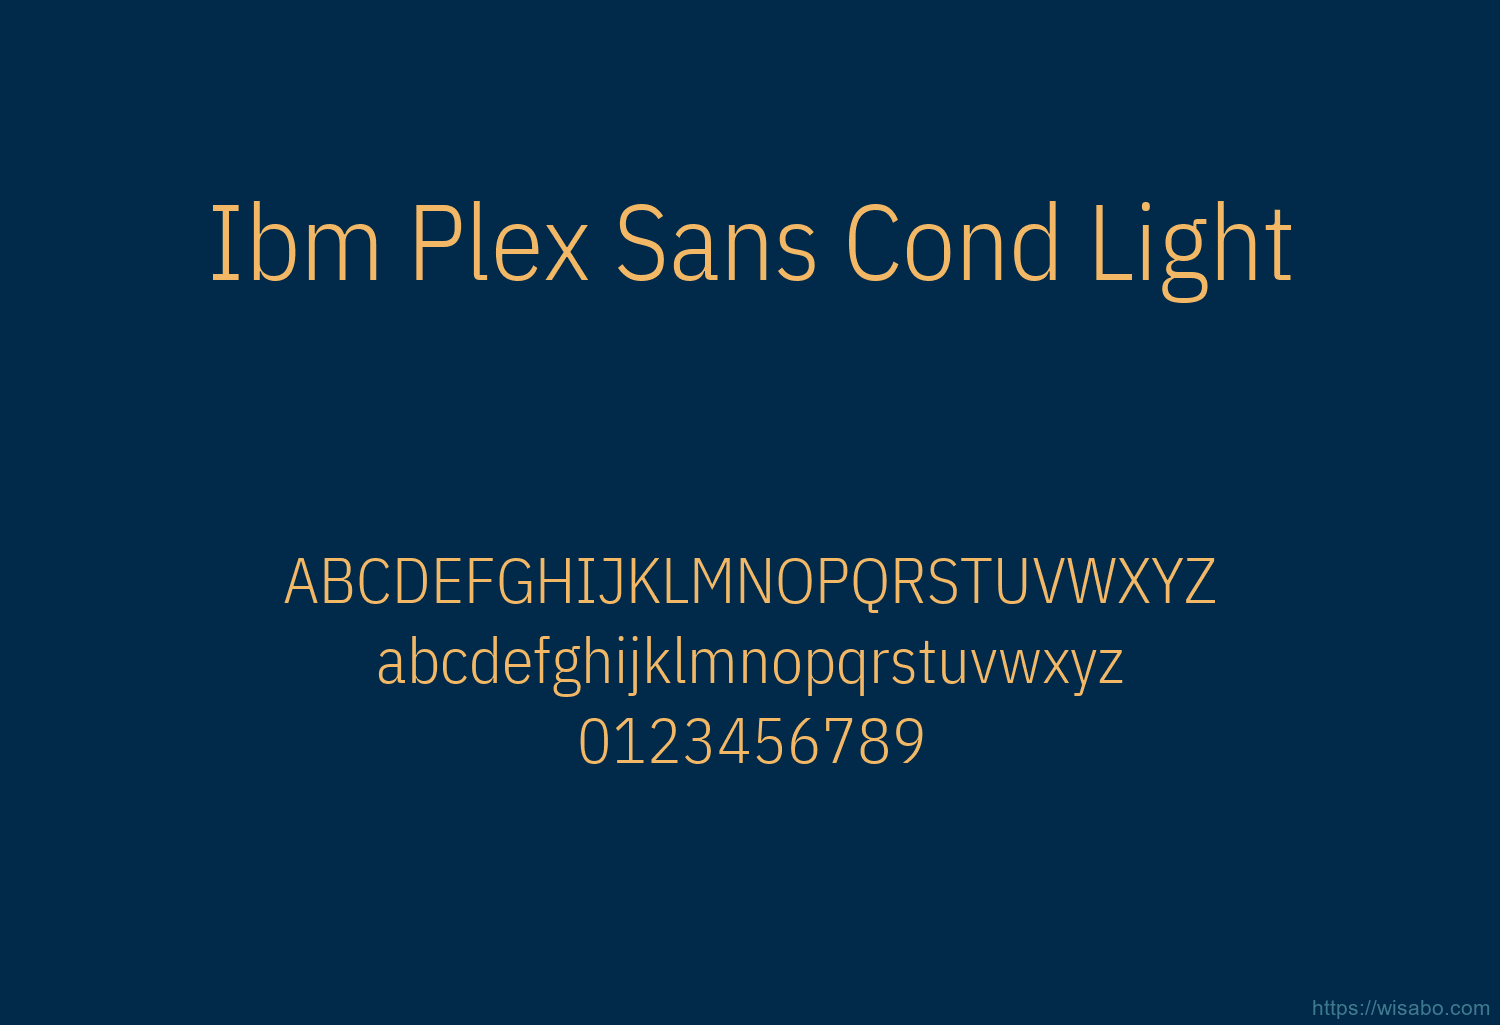 Ibm Plex Sans Cond Light